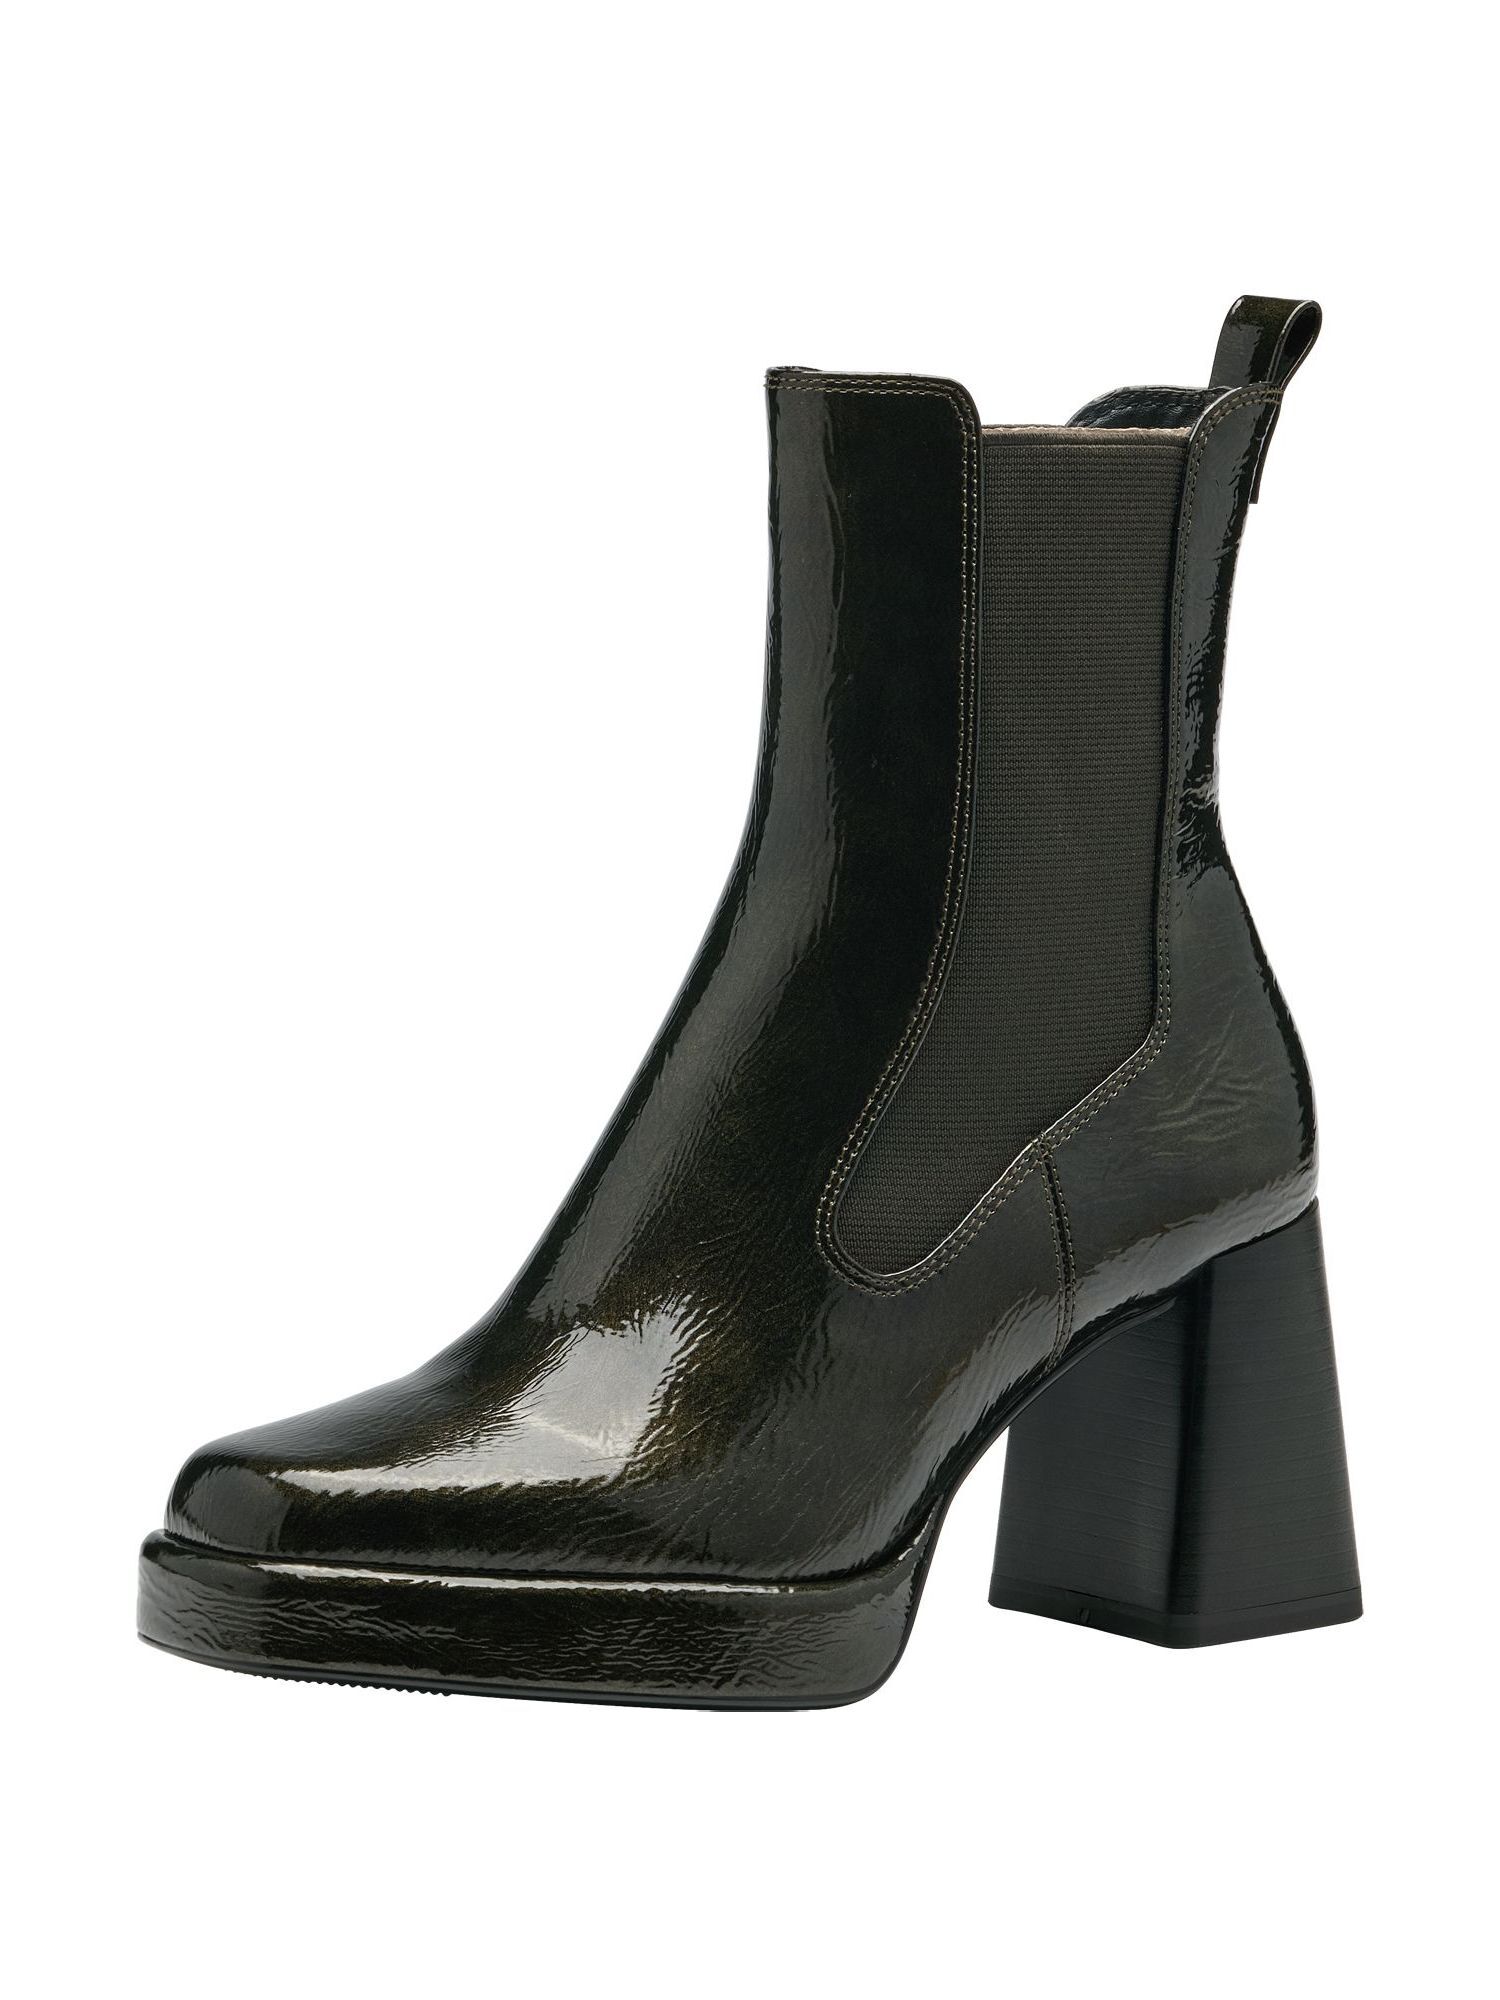 Ботинки Tamaris Chelsea Boot, оливковый ботинки женские tamaris оливковый 38